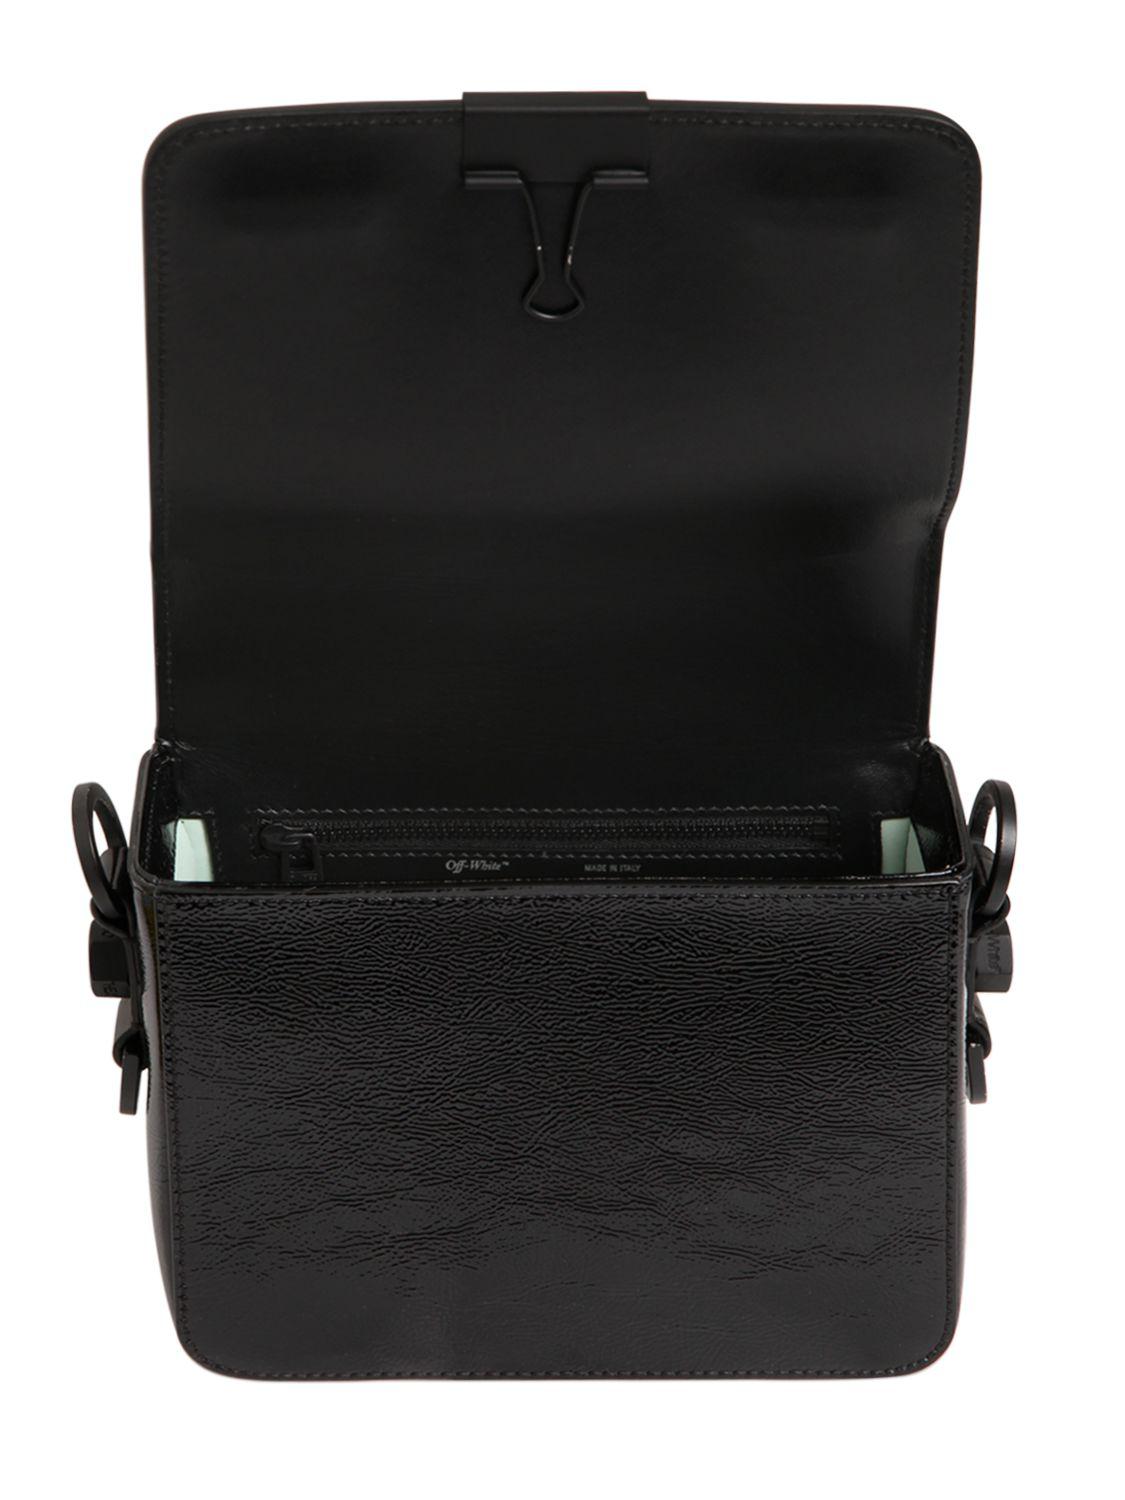 Off-White c/o Virgil Abloh Binder Clip Patent Leather Shoulder Bag in Black - Lyst